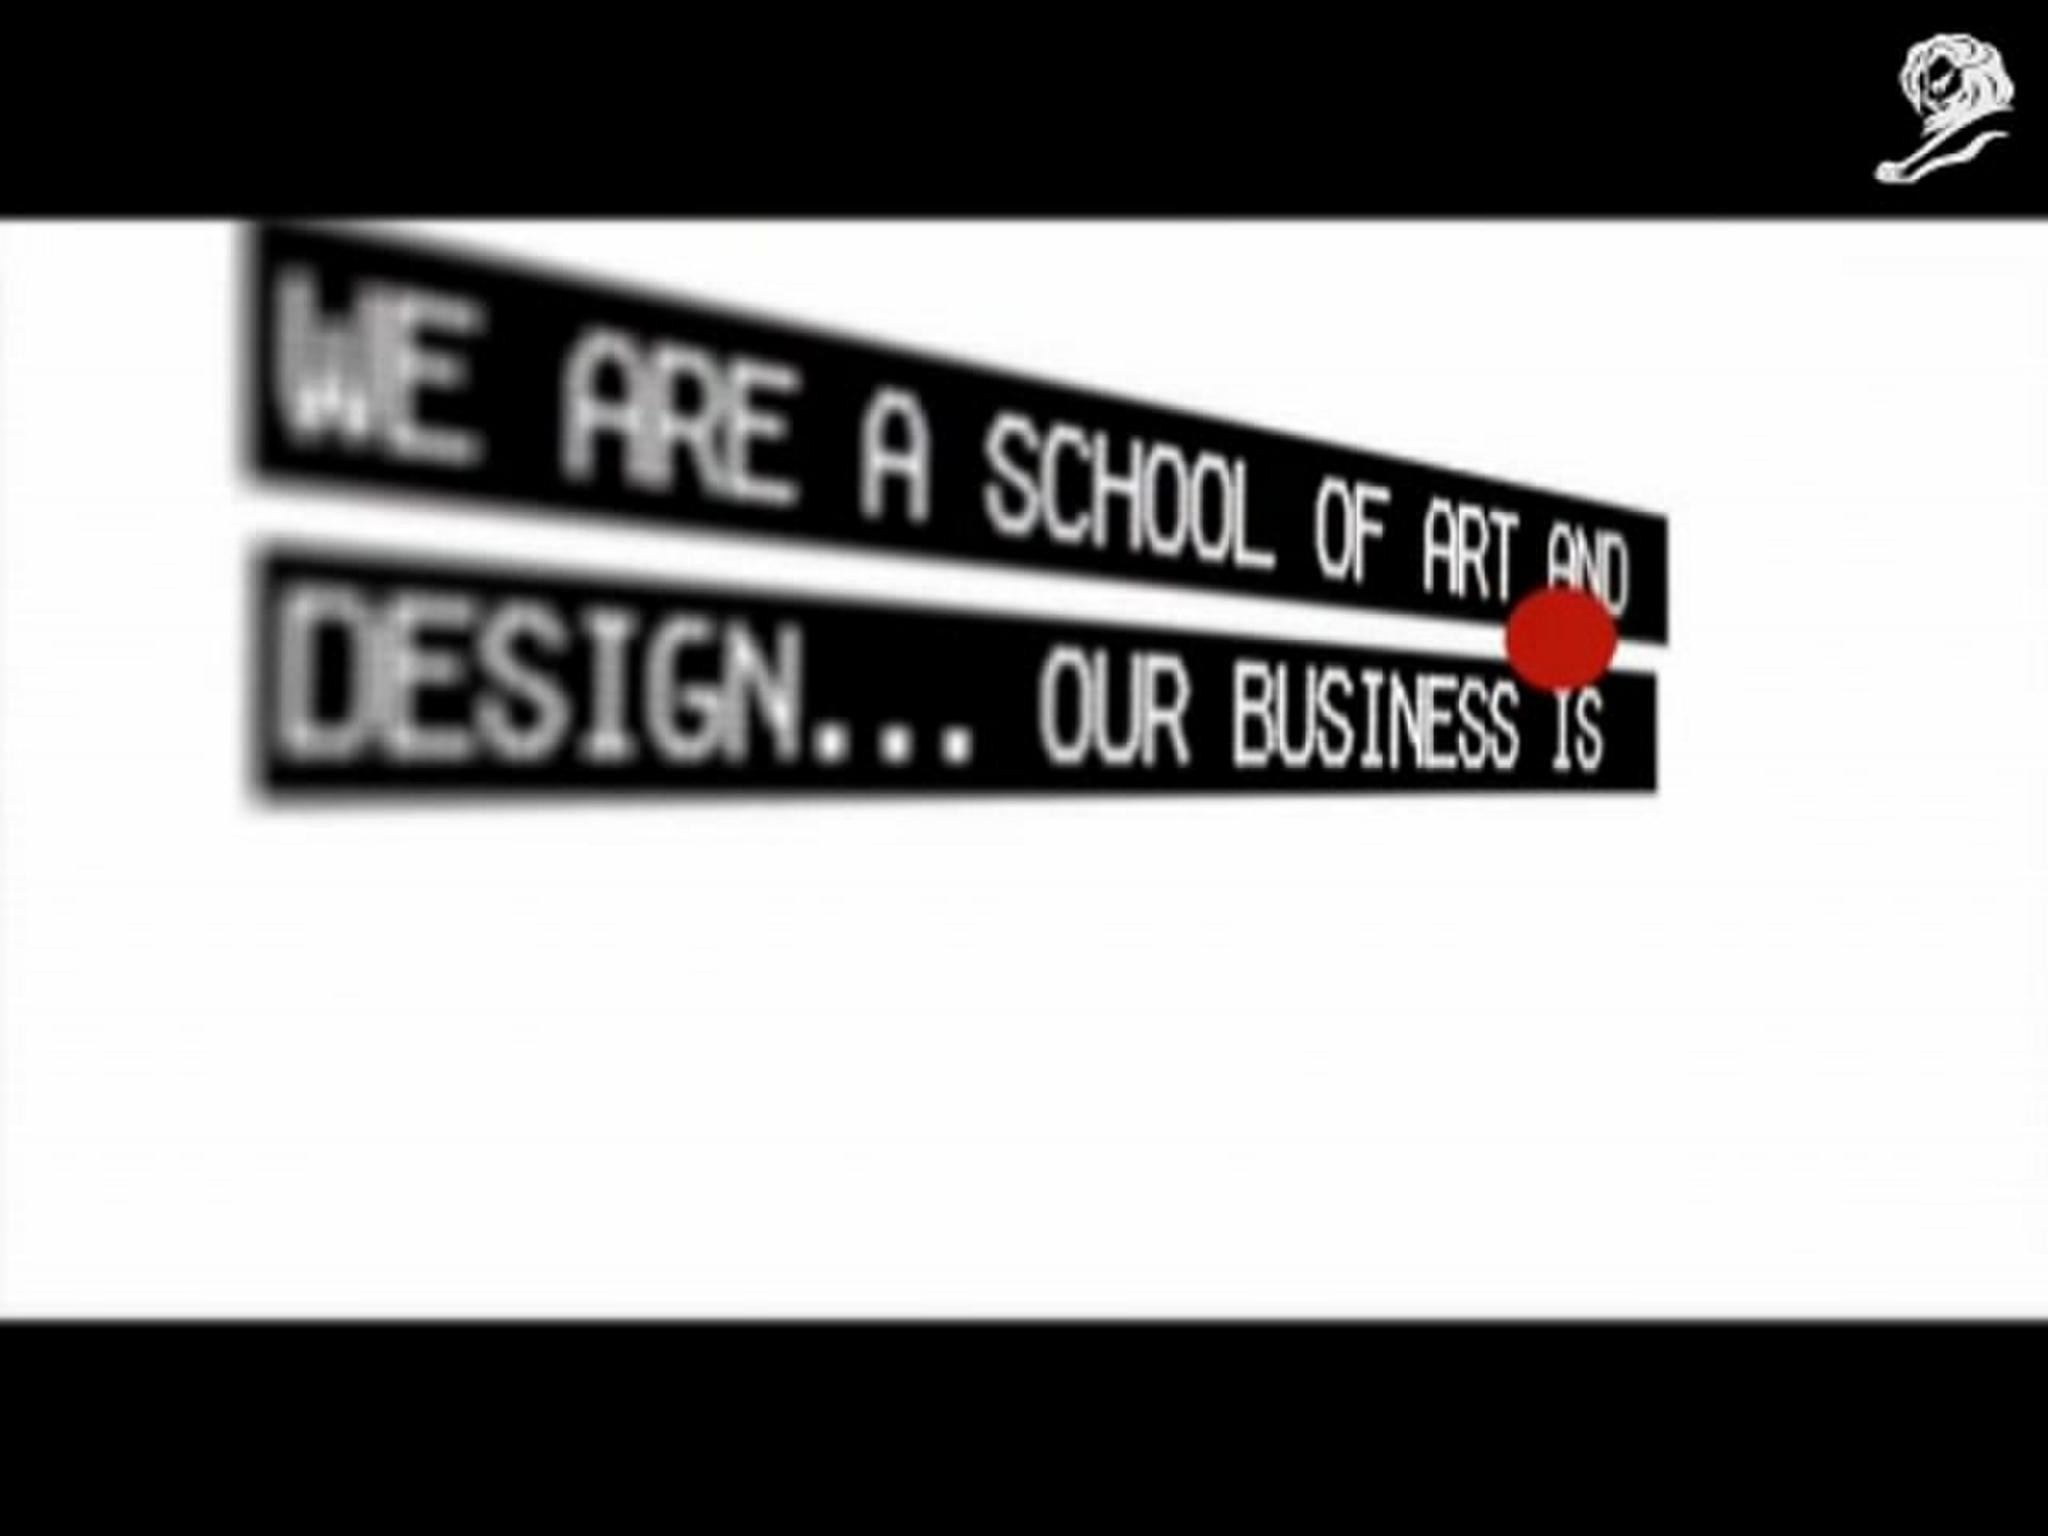 ART AND DESIGN SCHOOL